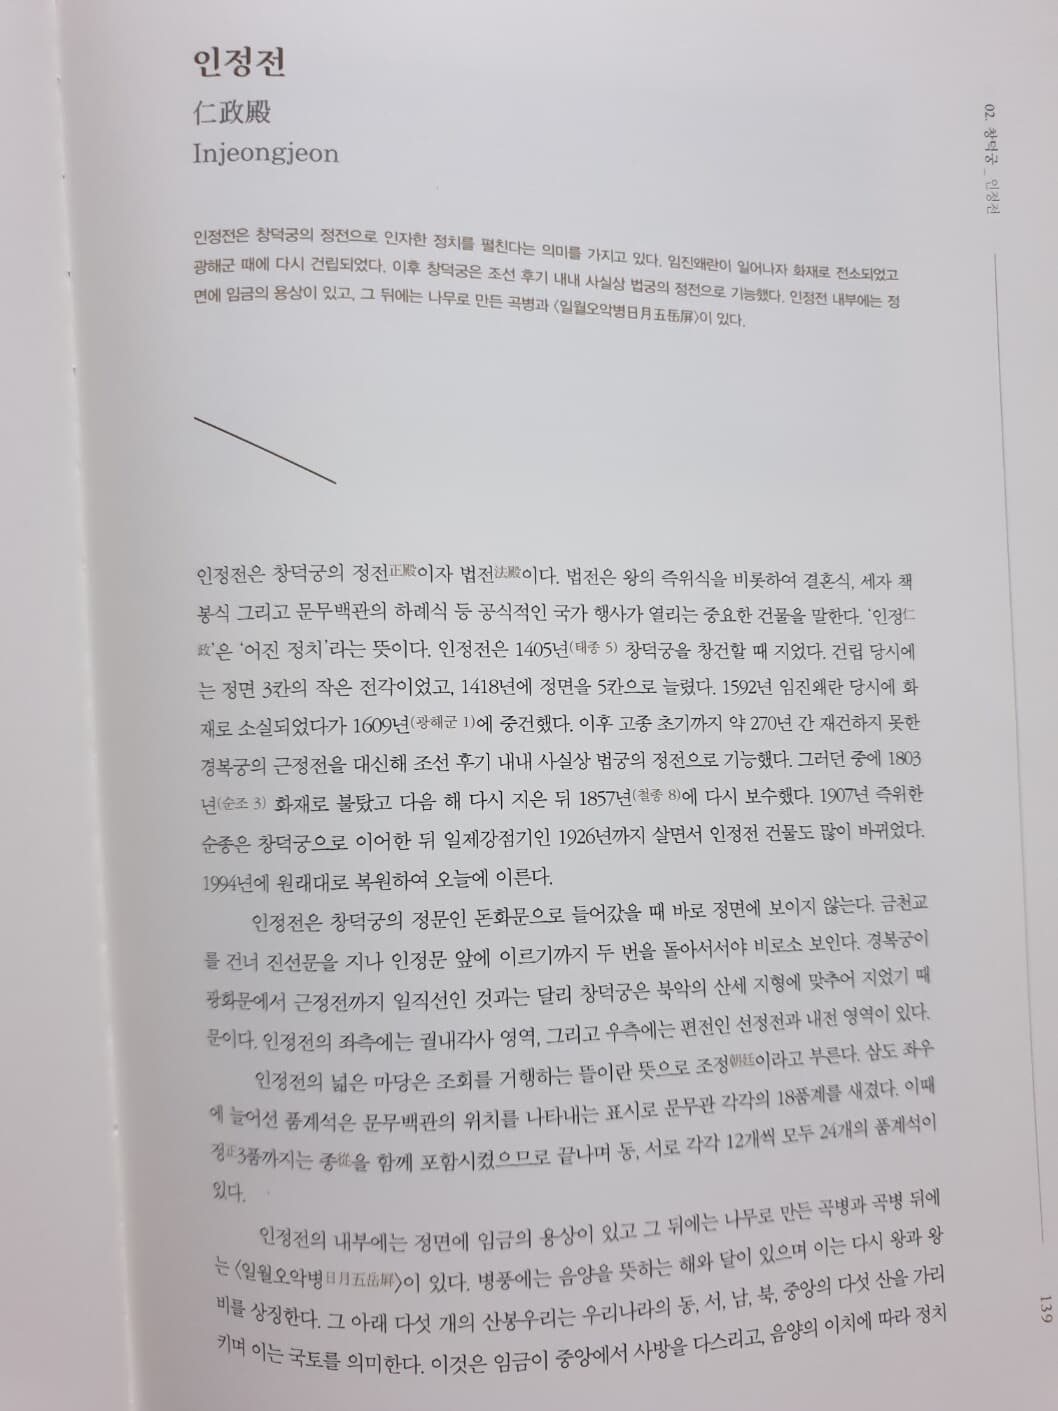 이미지로 읽는 근대 서울 1 - 궁궐의 훼철과 박람회